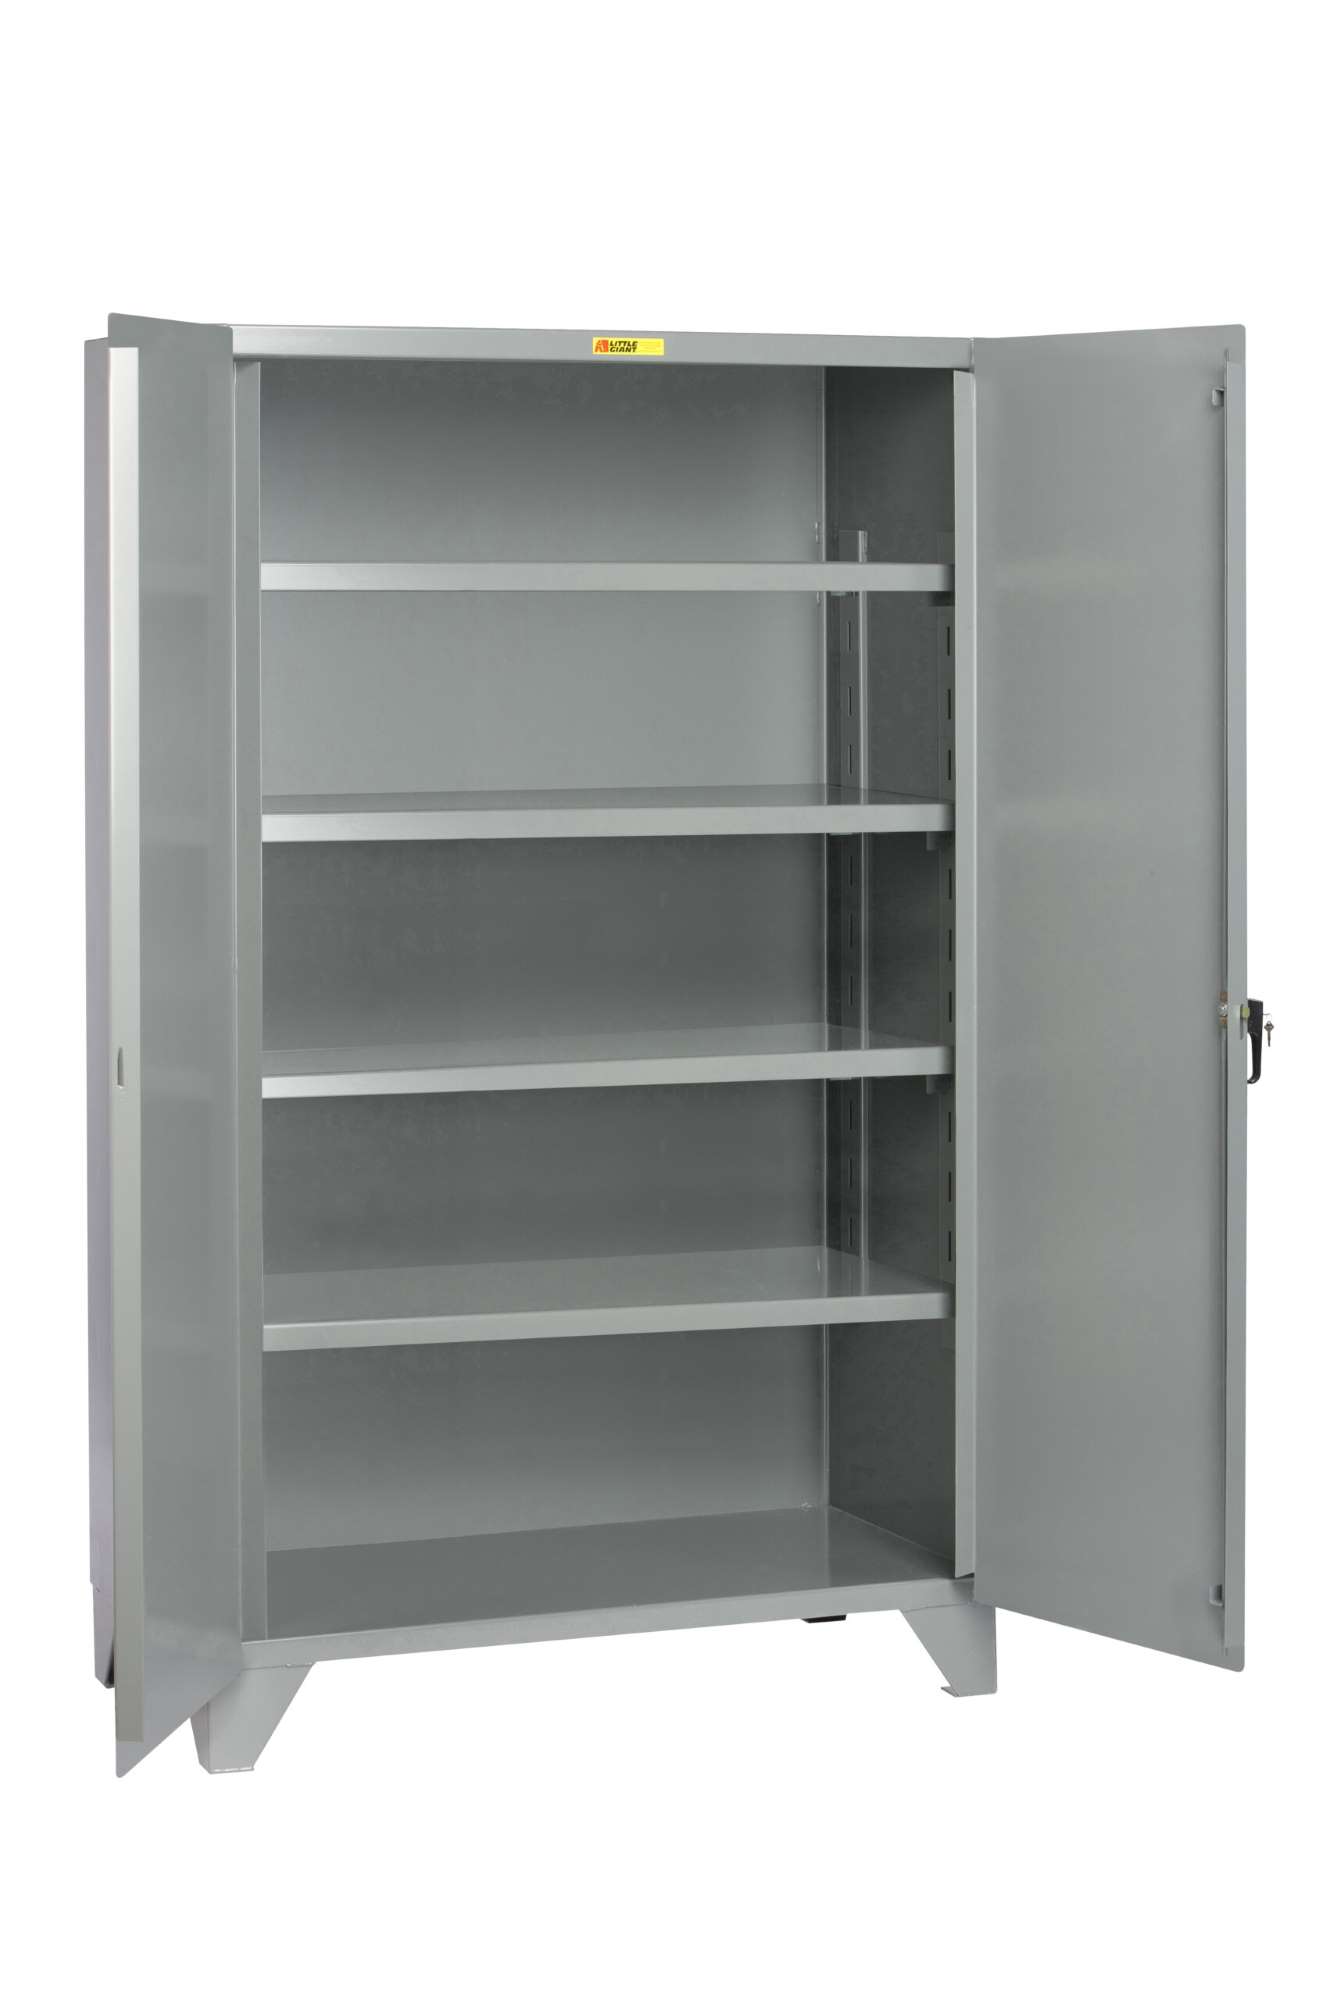 Little Giant steel storage cabinet, Lockable doors, Adjustable shelves, 78" overall height